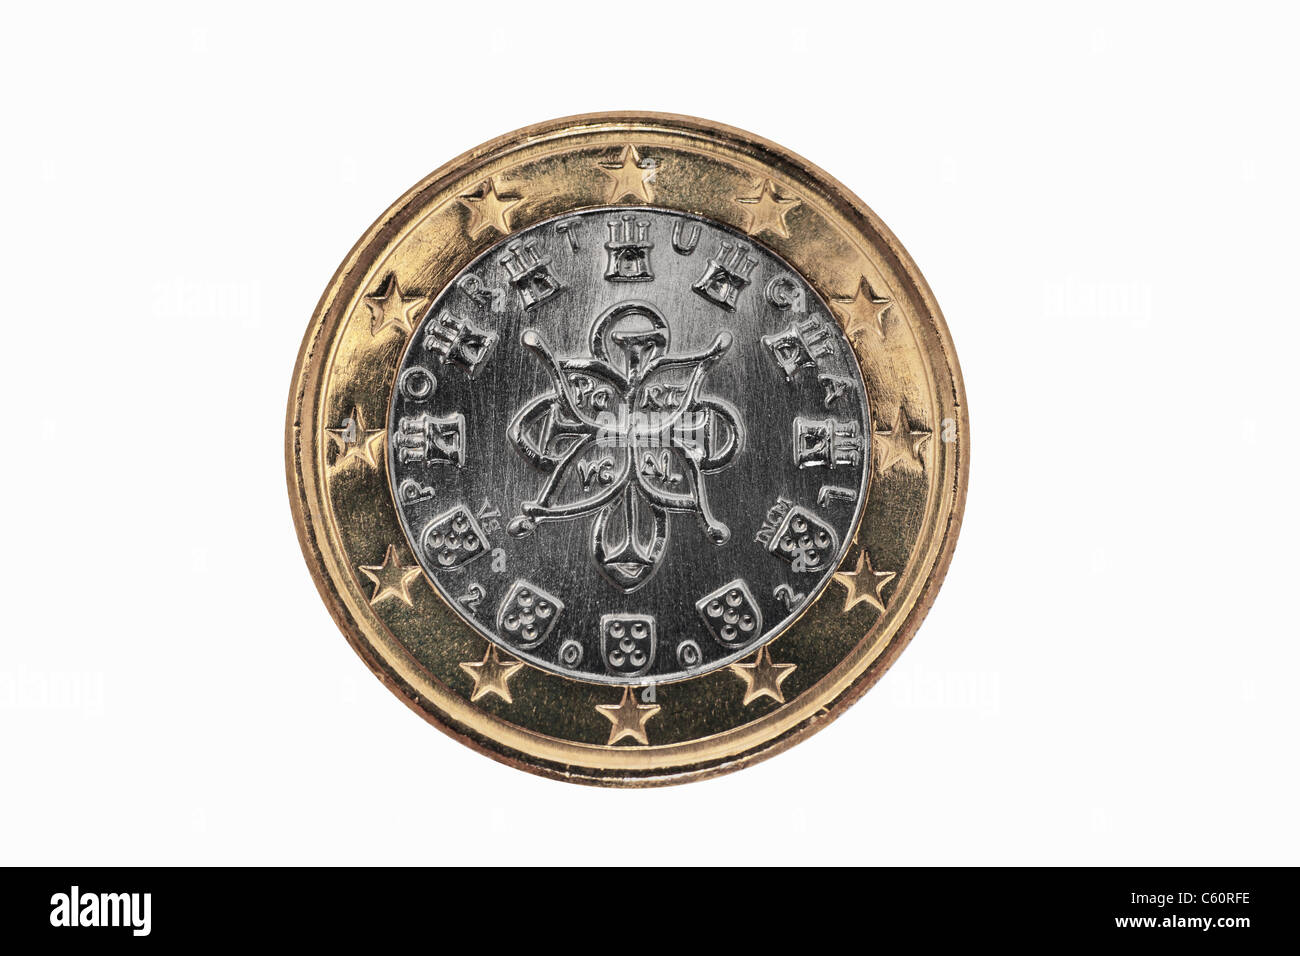 Detailansicht der Rückseite mit 1- Euro Münze aus Portugal | photo détail d'un verso d'une pièce de 1 Euro de Portugal Banque D'Images